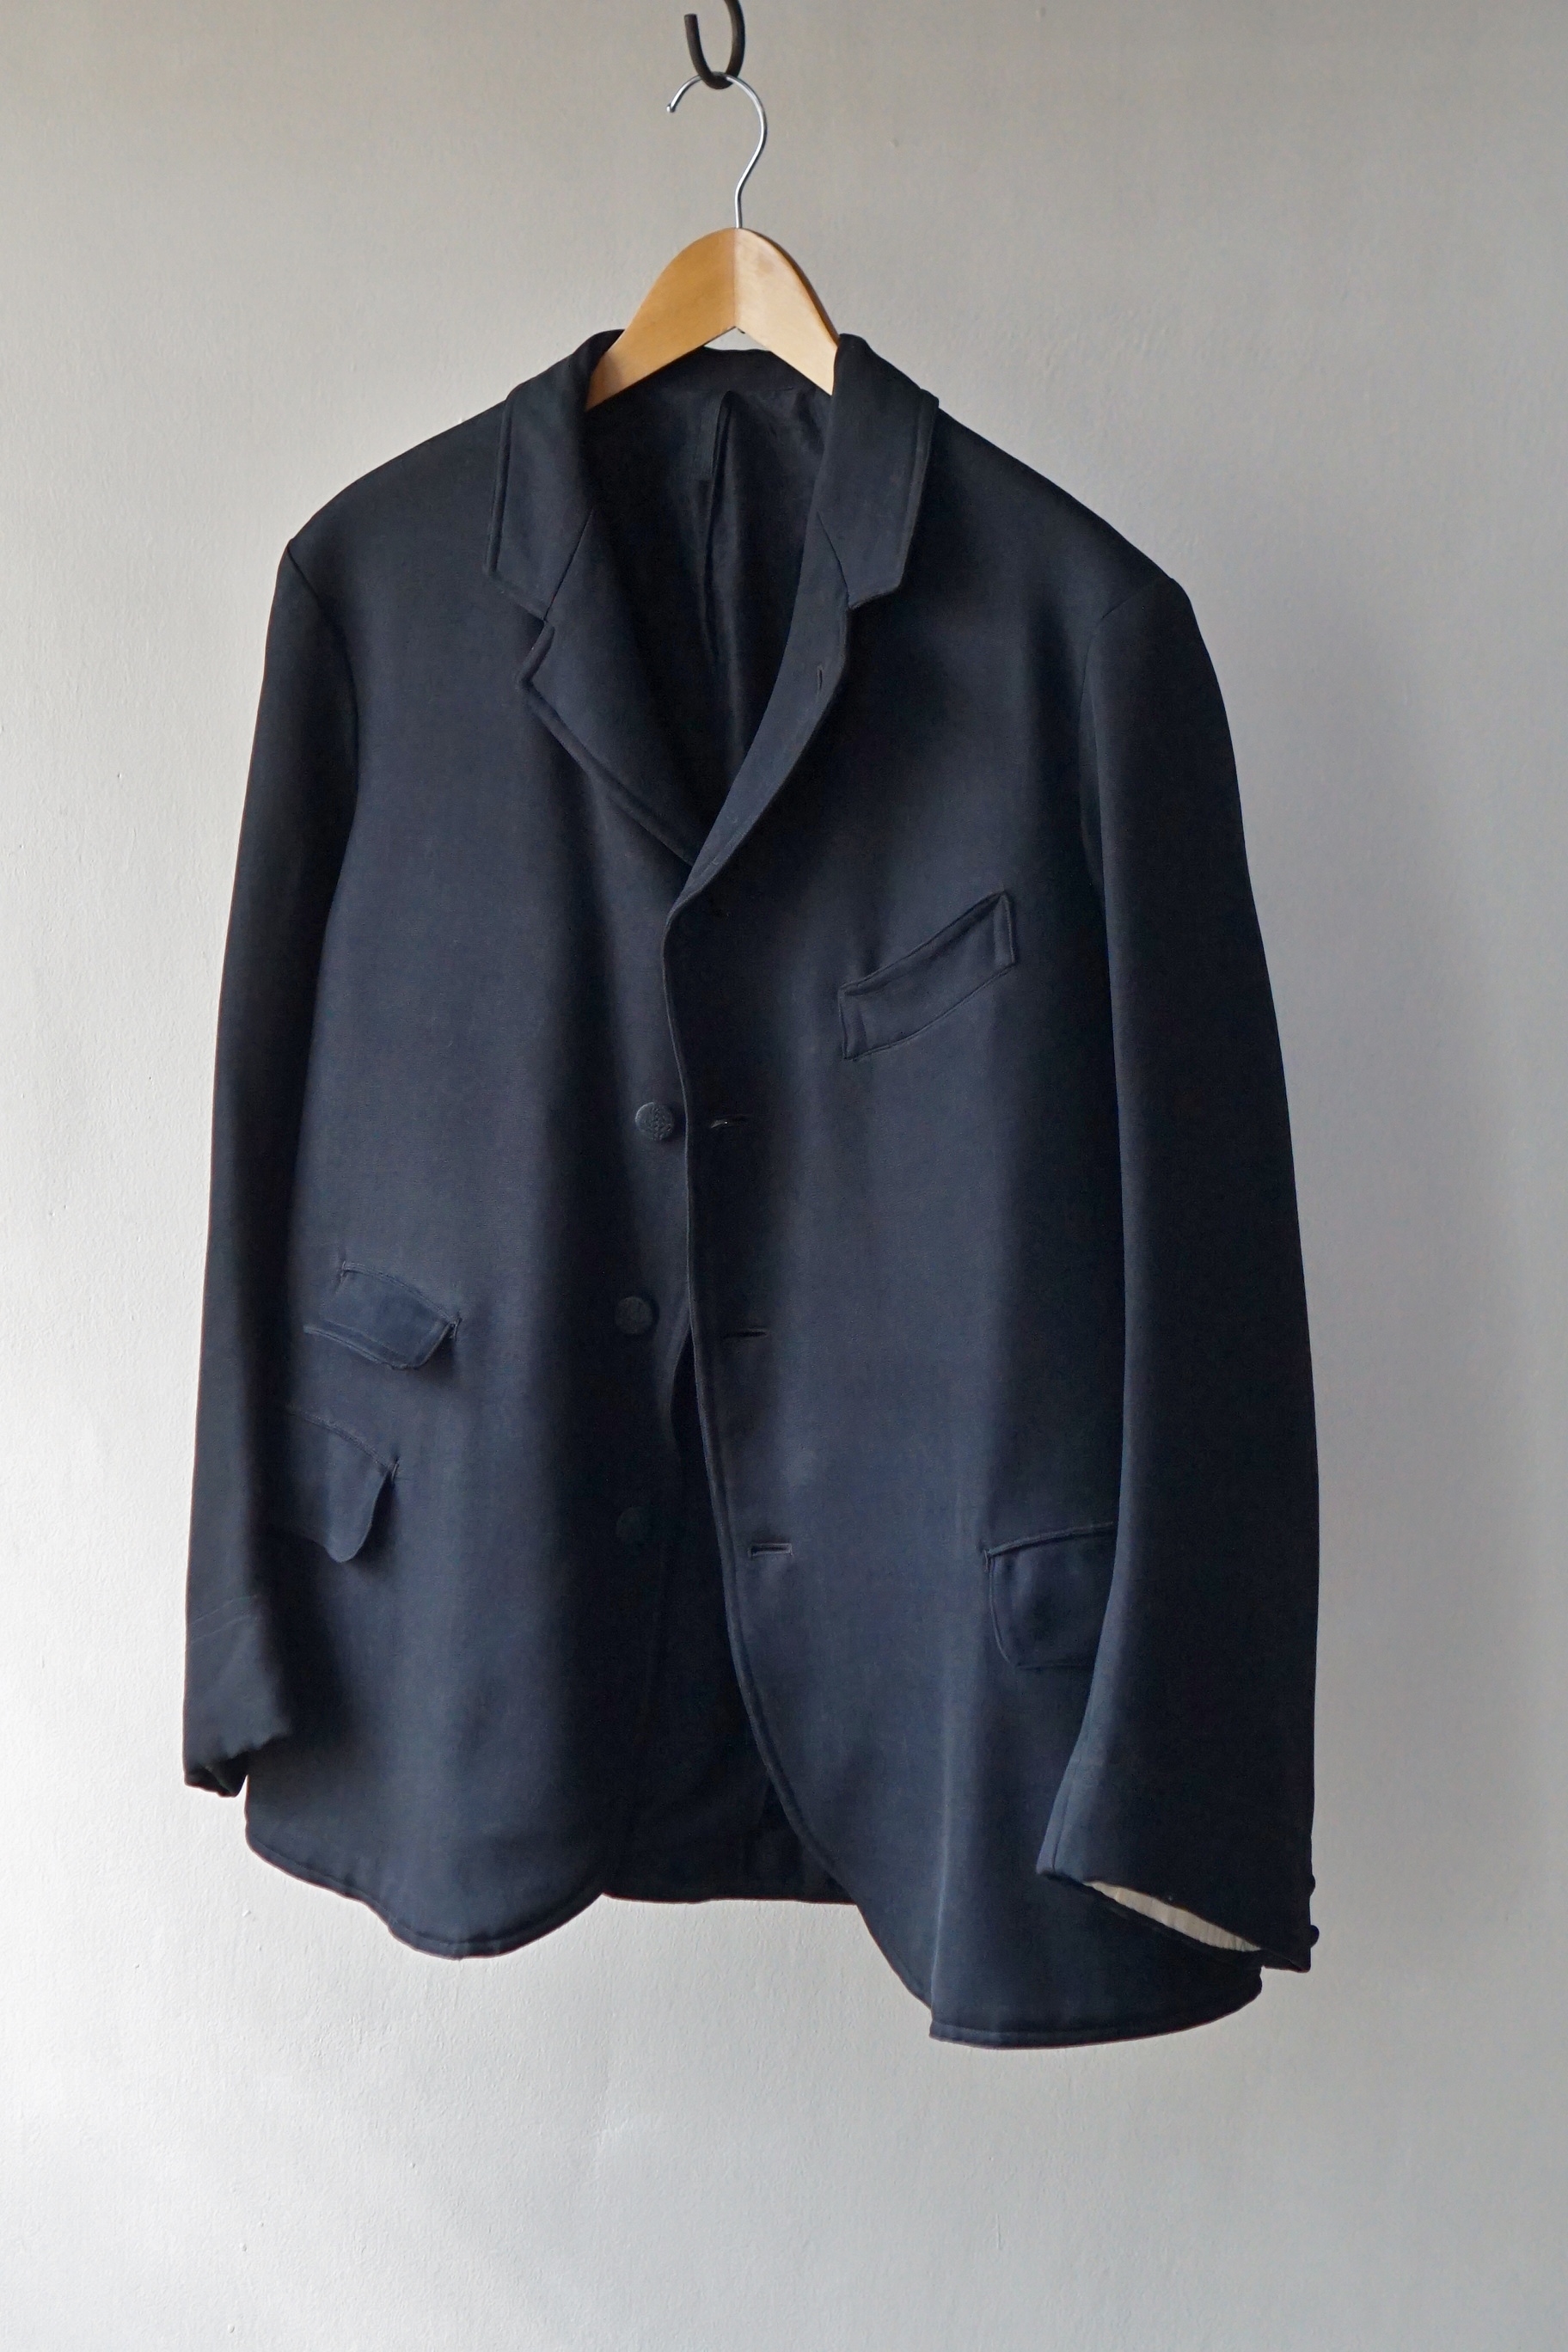 身幅511930-40s French vintage sack coat - テーラードジャケット